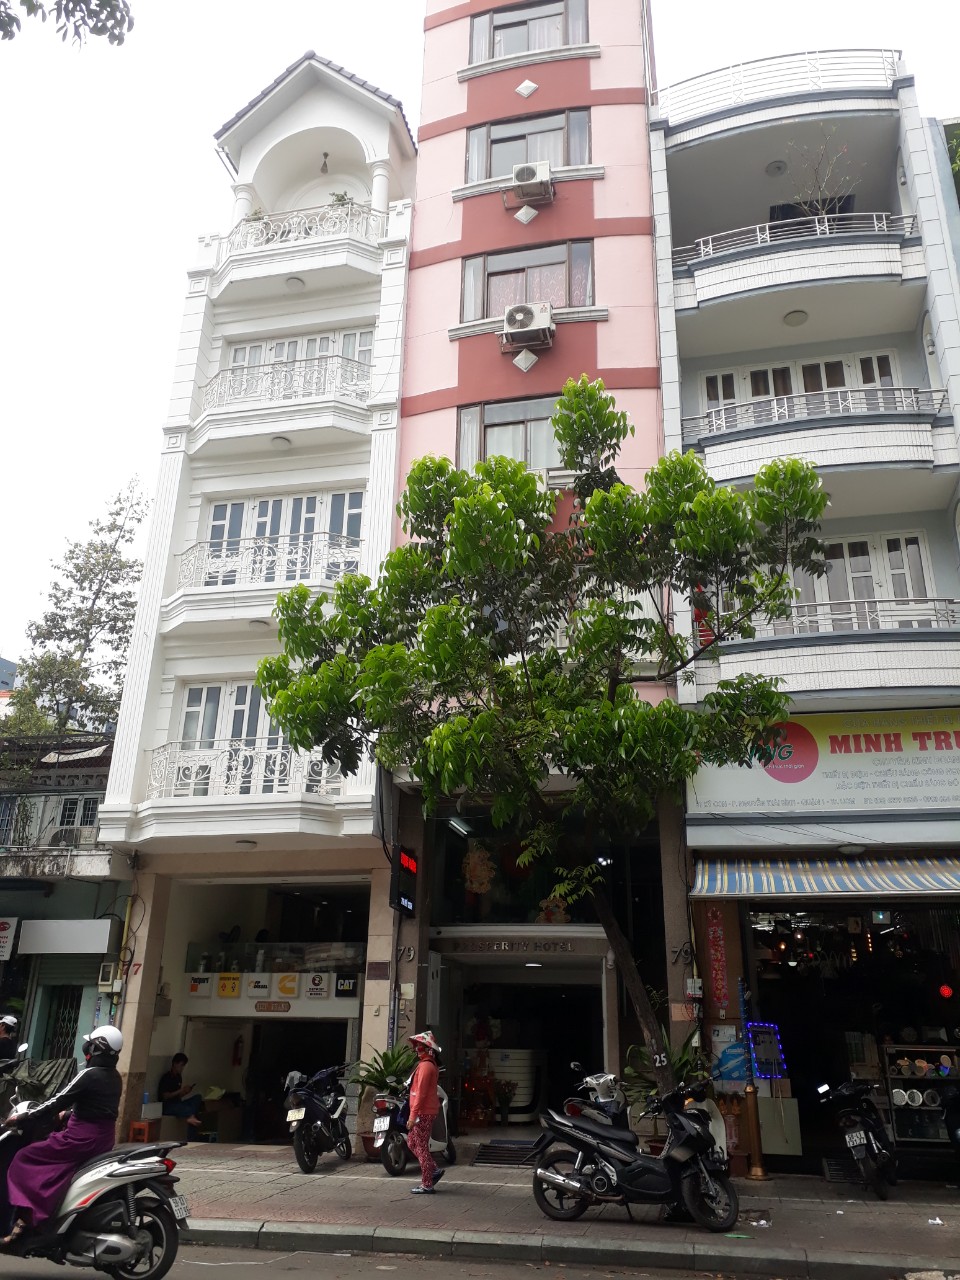 Khách sạn MT quận 1 cho thuê Nguyễn Thái Học,18 phòng.Giá 140 triệu